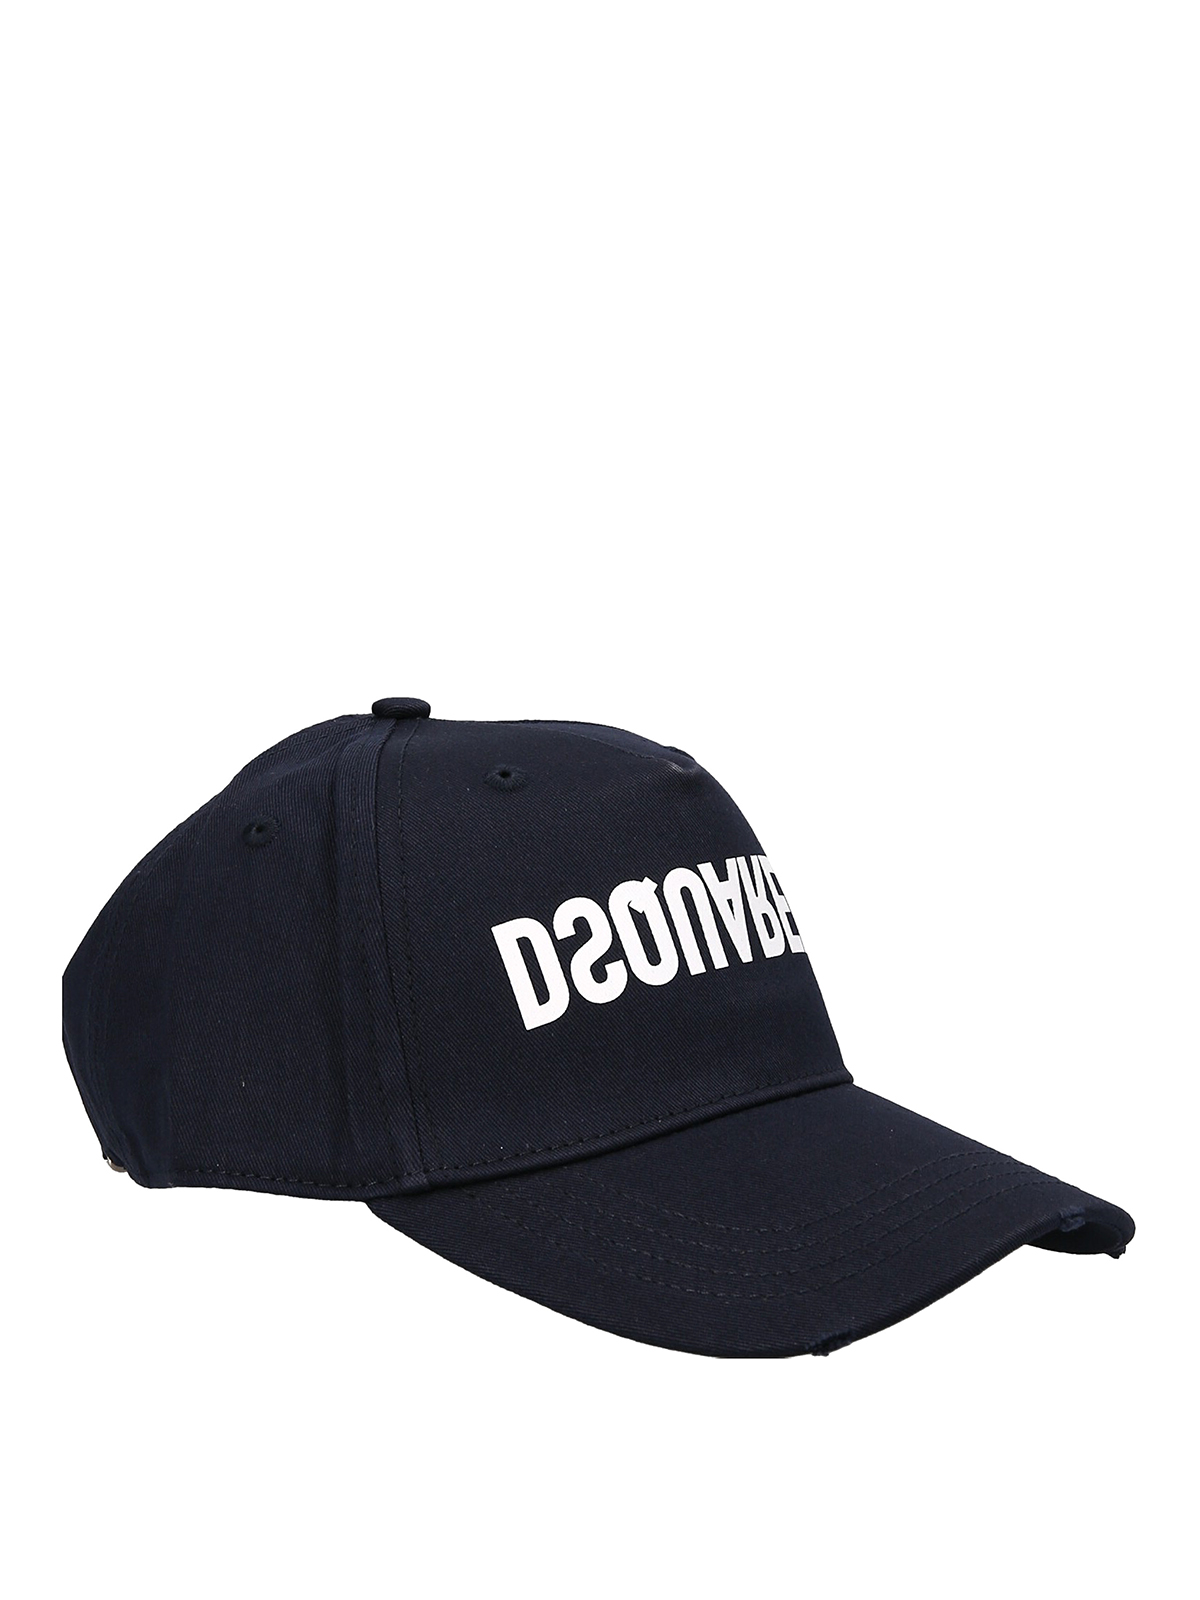 Hats & caps Dsquared2 - Logo cap - BCM065805C00001M2186 | iKRIX.com